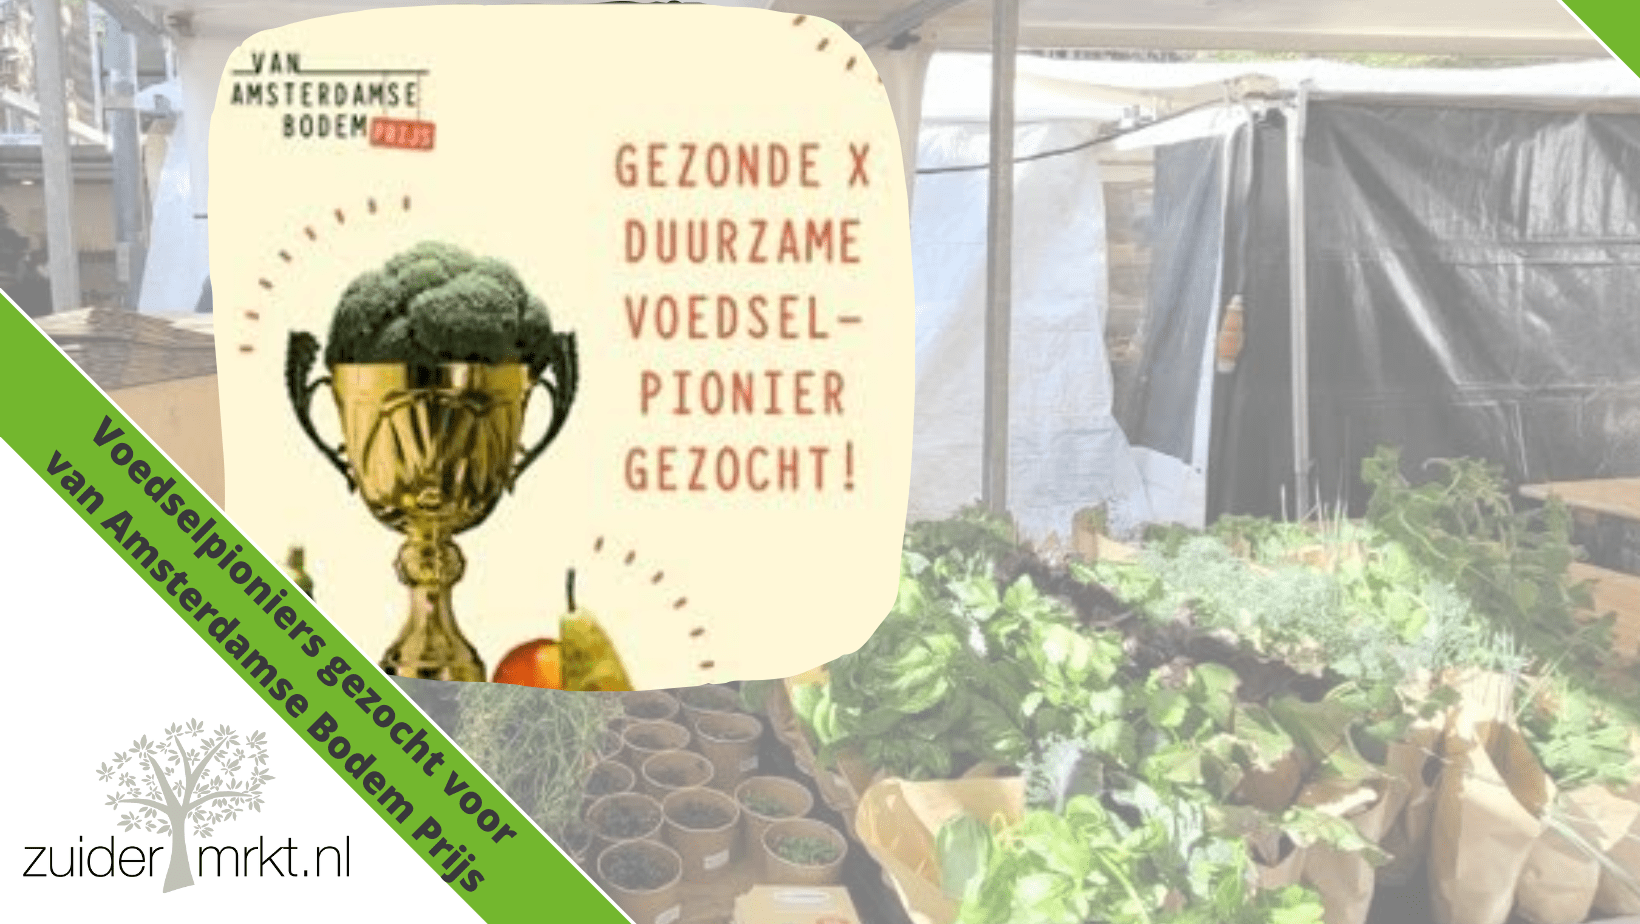 Duurzame x gezonde voedselpioniers gezocht voor Van Amsterdamse Bodem Prijs